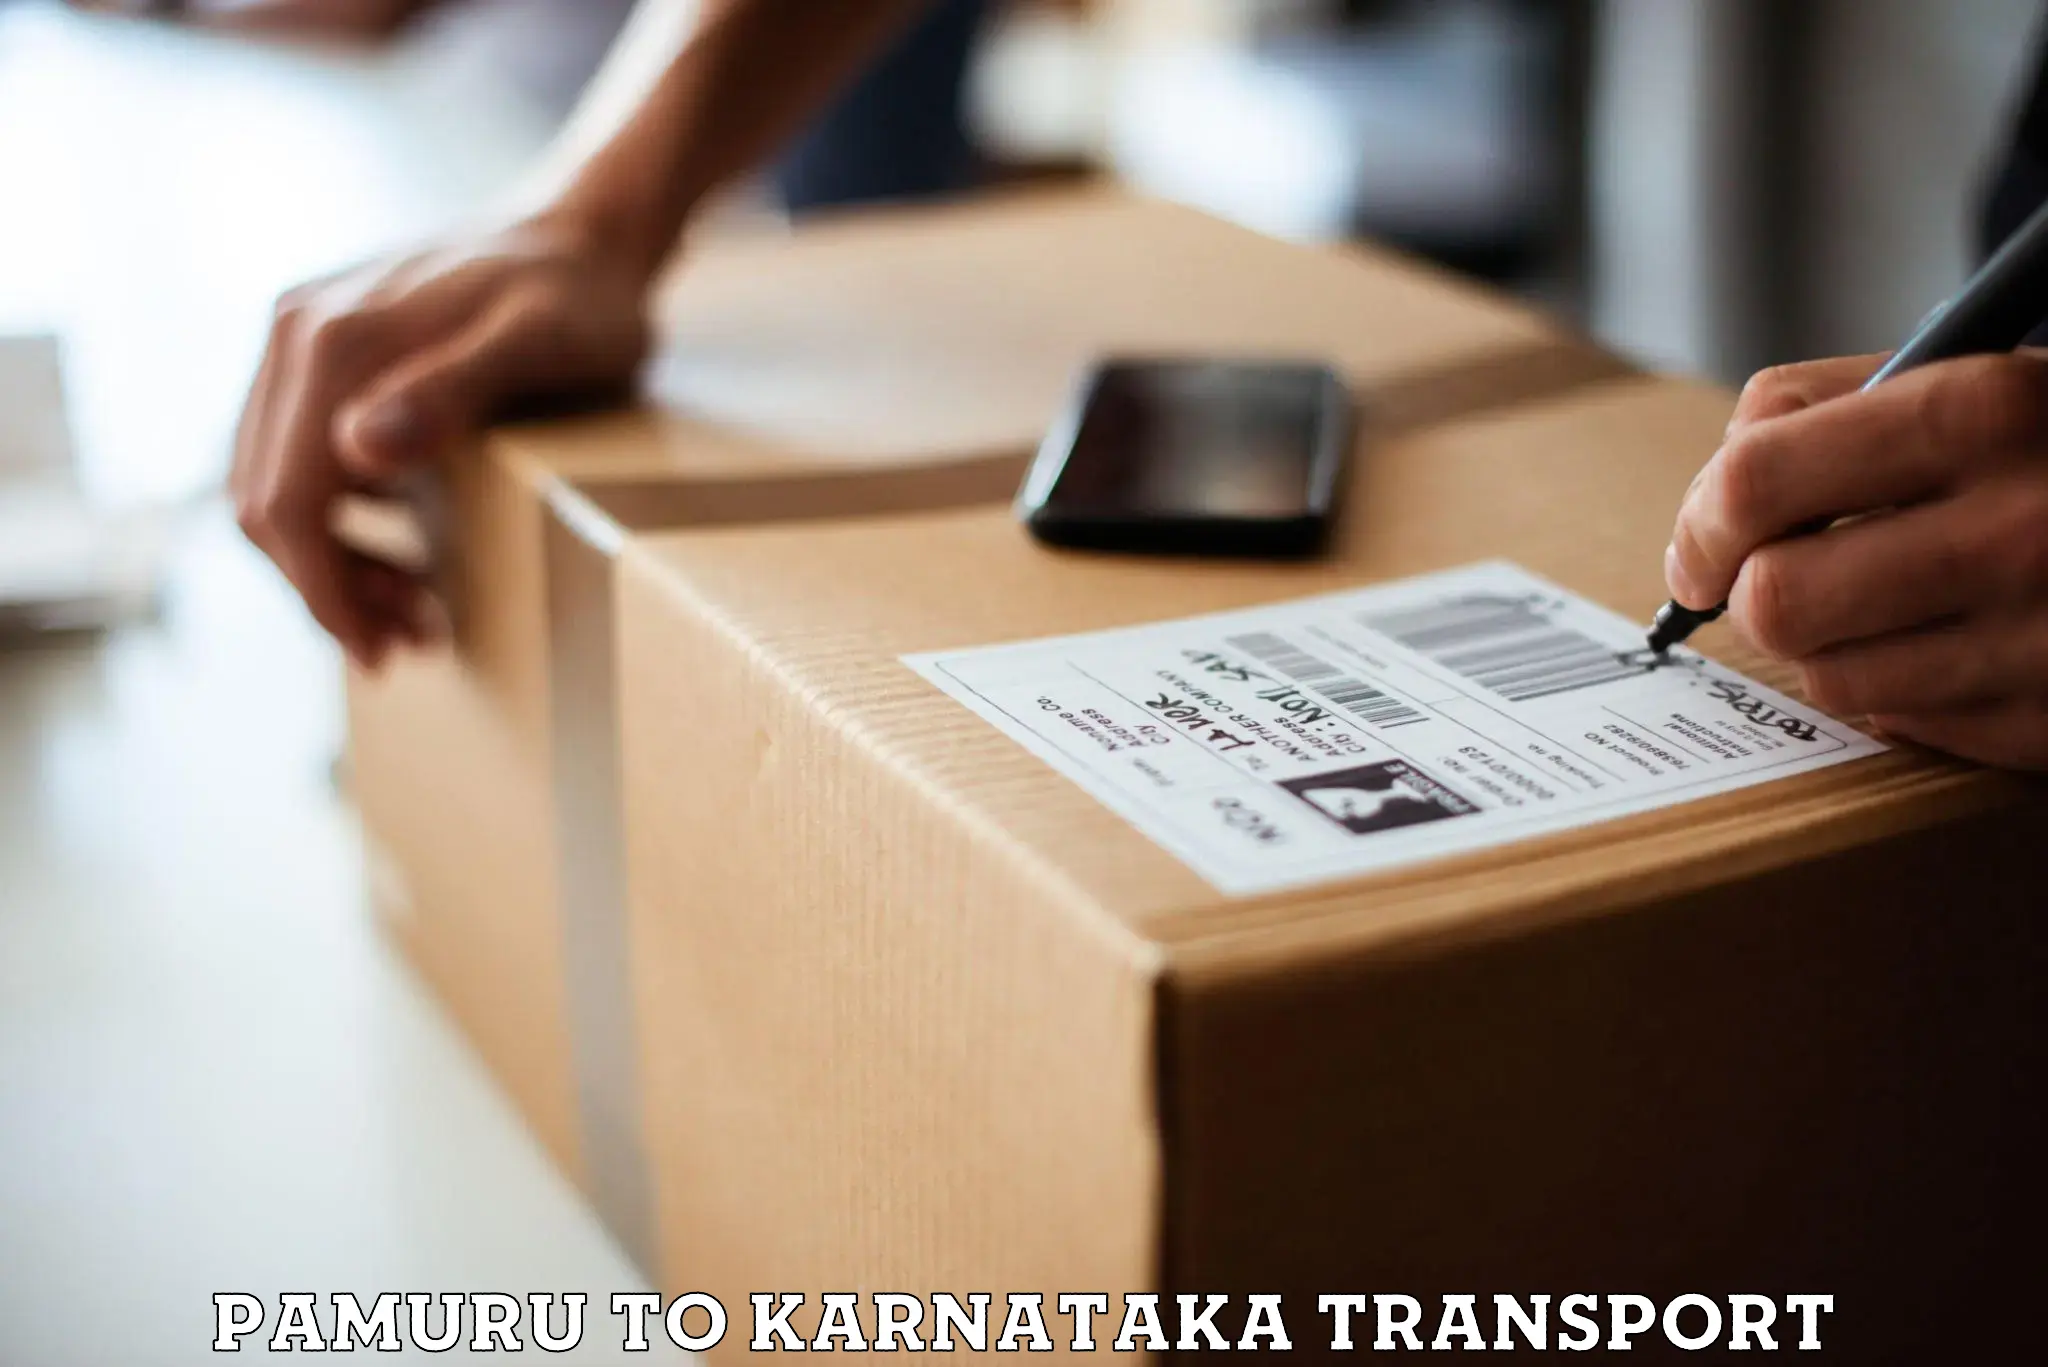 Interstate transport services in Pamuru to Bengaluru